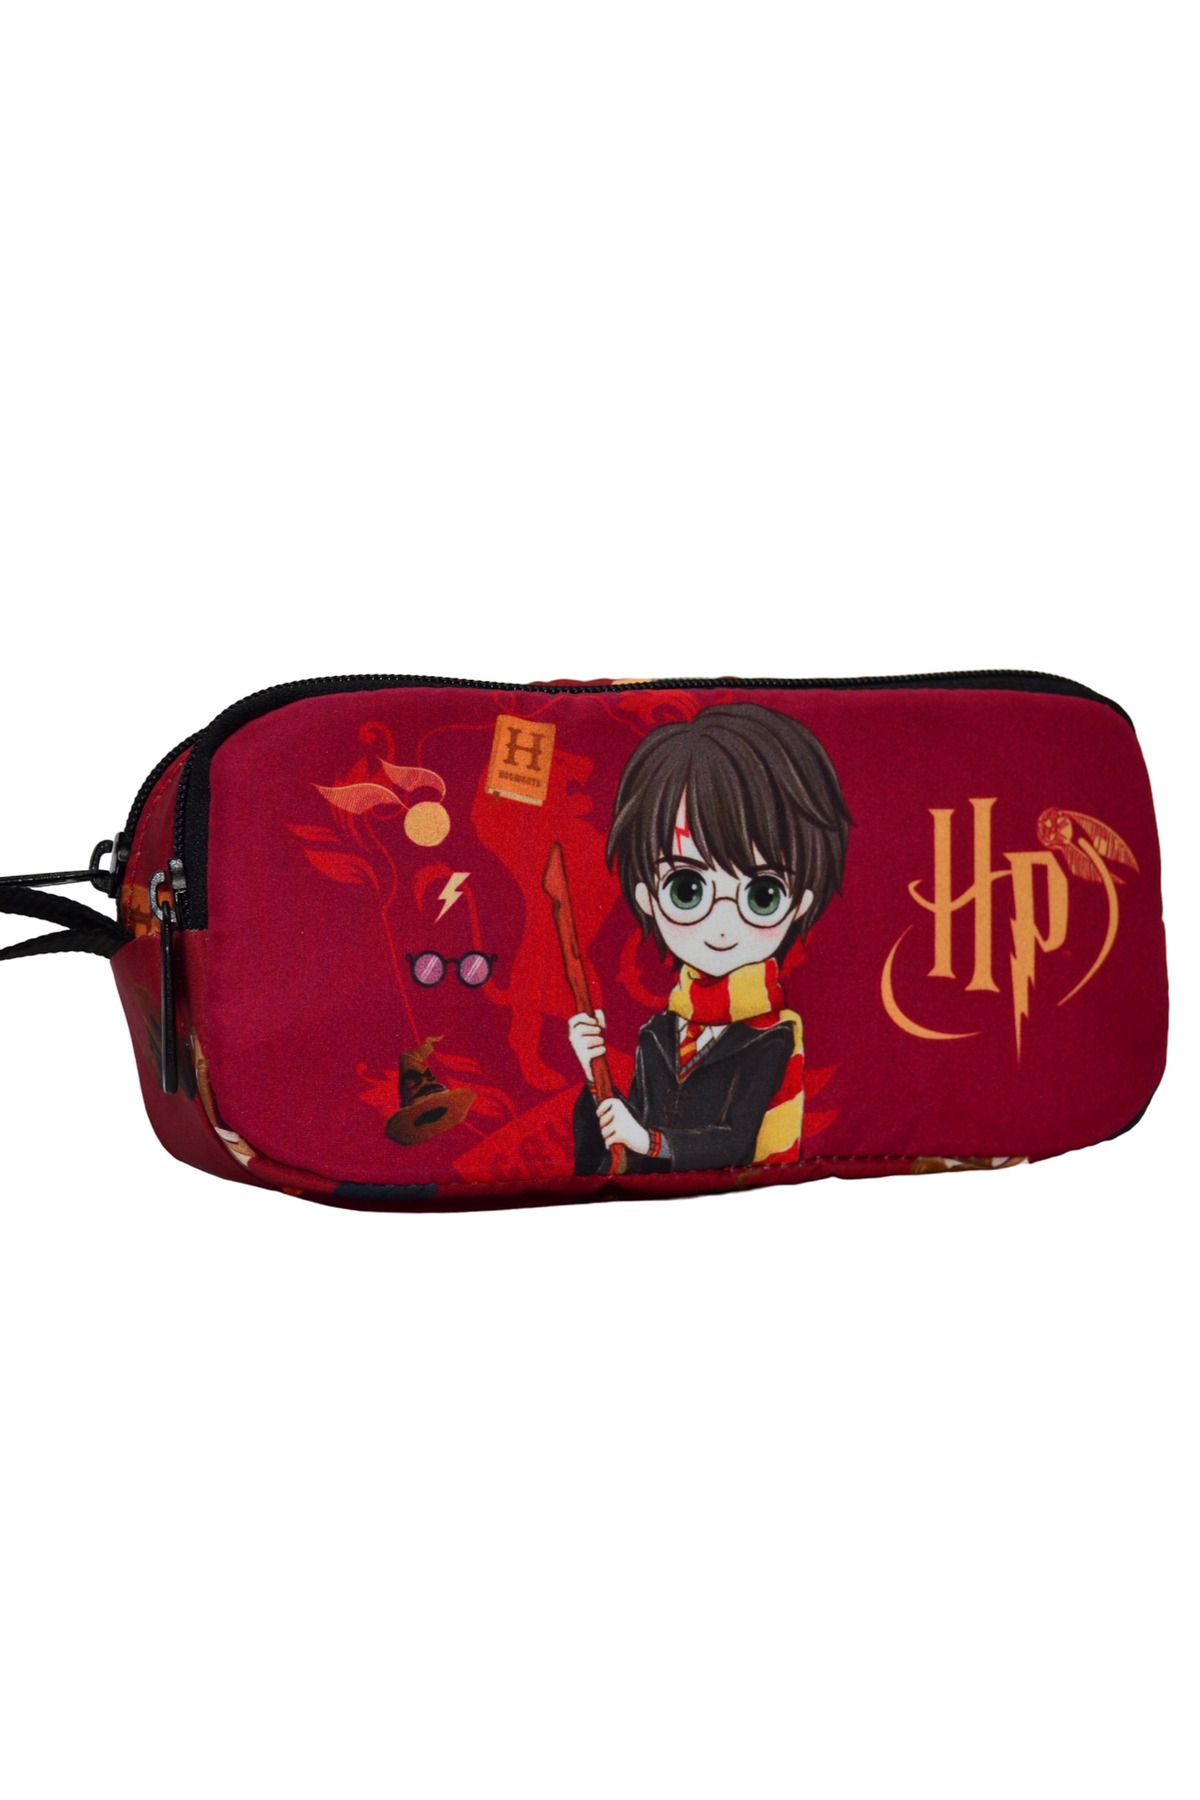 Clementoni 18126 - Memo Pocket Harry Potter - Brinquedos educativos, m